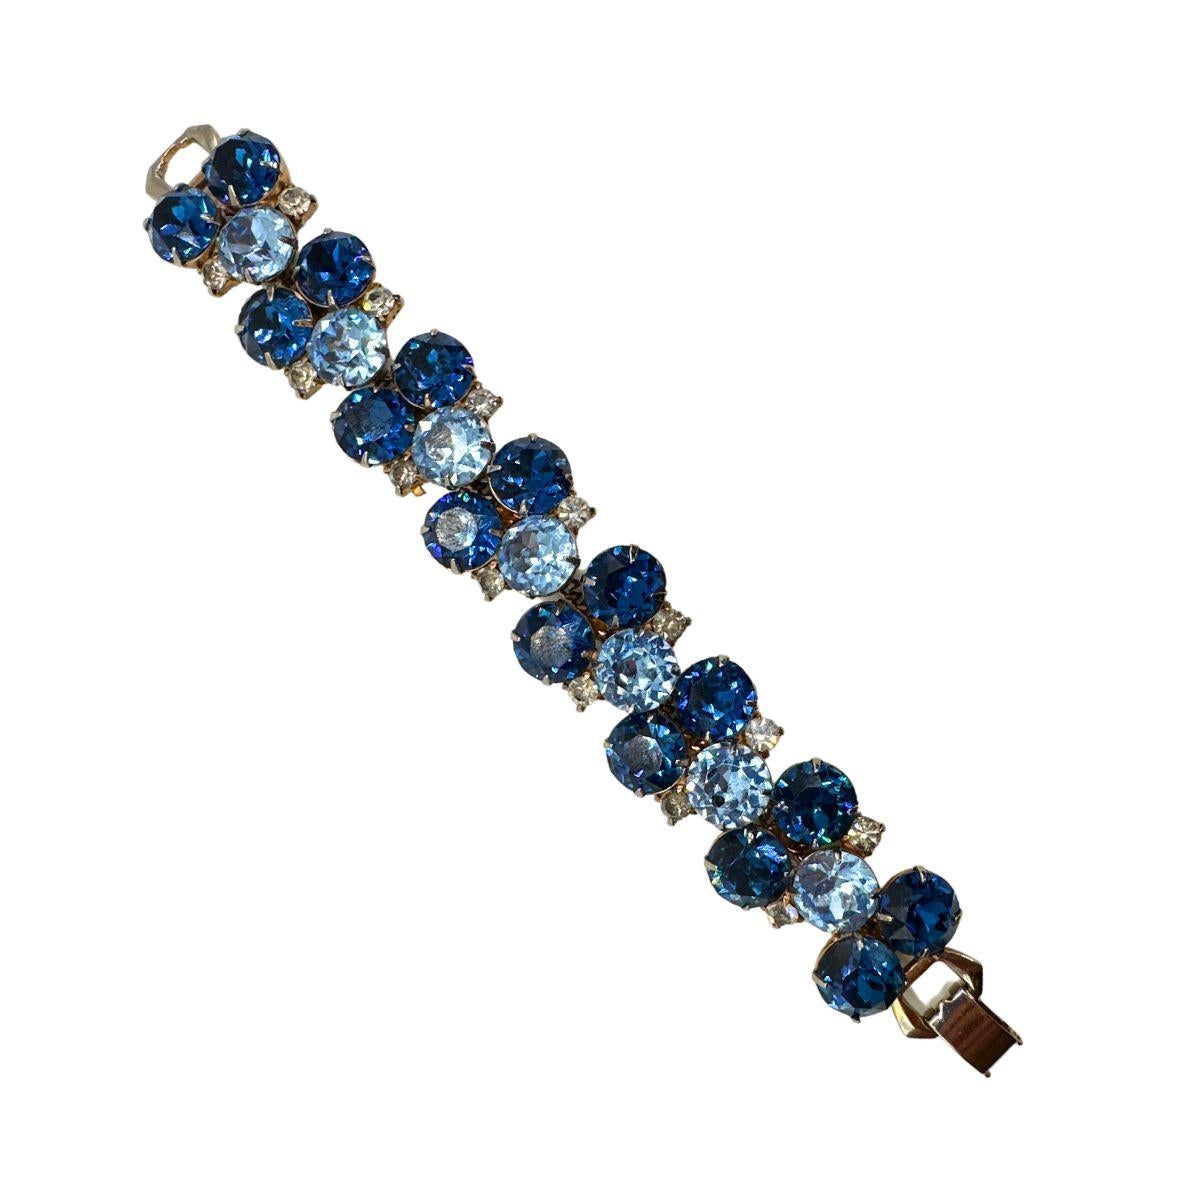 Longueur du bracelet : 7″.

Taille des boucles d'oreilles:1.23″ X 0.87″

Code de la corbeille : N10 /P13

Entrez dans un monde d'élégance vintage avec cet exquis ensemble de bracelets et d'Eleg en verre bleu cobalt et bleu clair de Hobe Vintage.